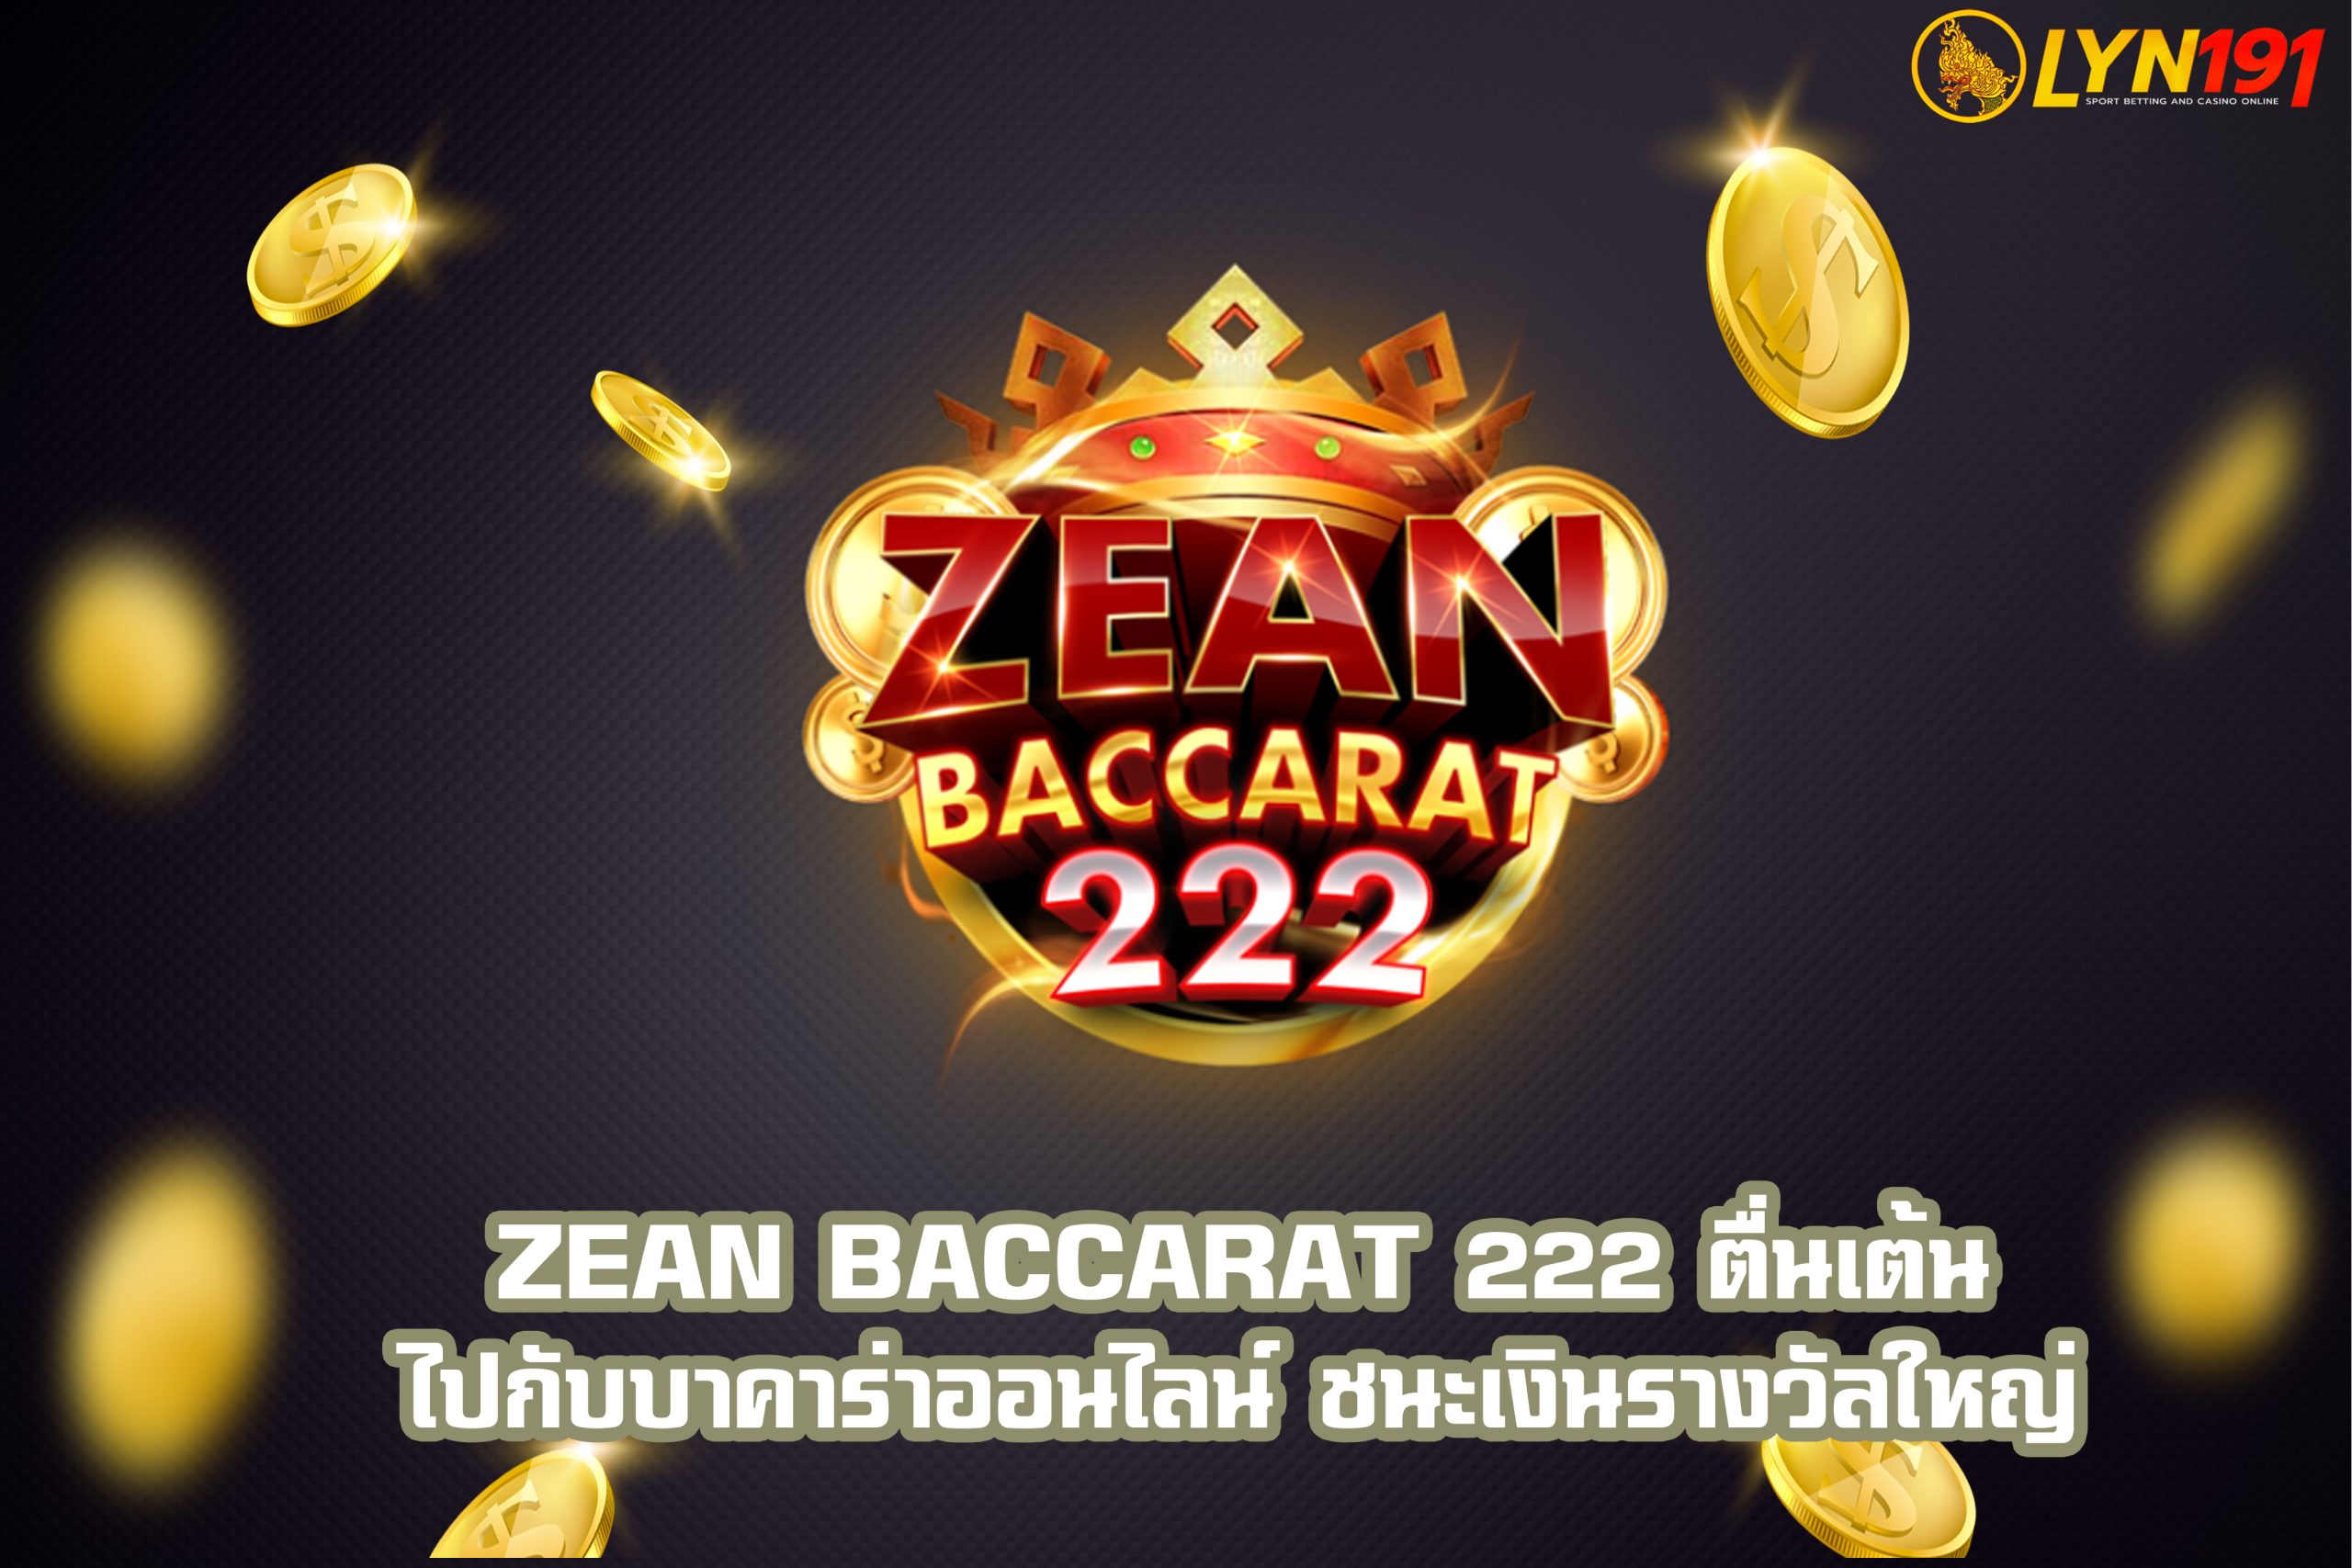 ZEAN baccarat 222 ตื่นเต้นไปกับบาคาร่าออนไลน์ ชนะเงินรางวัลใหญ่